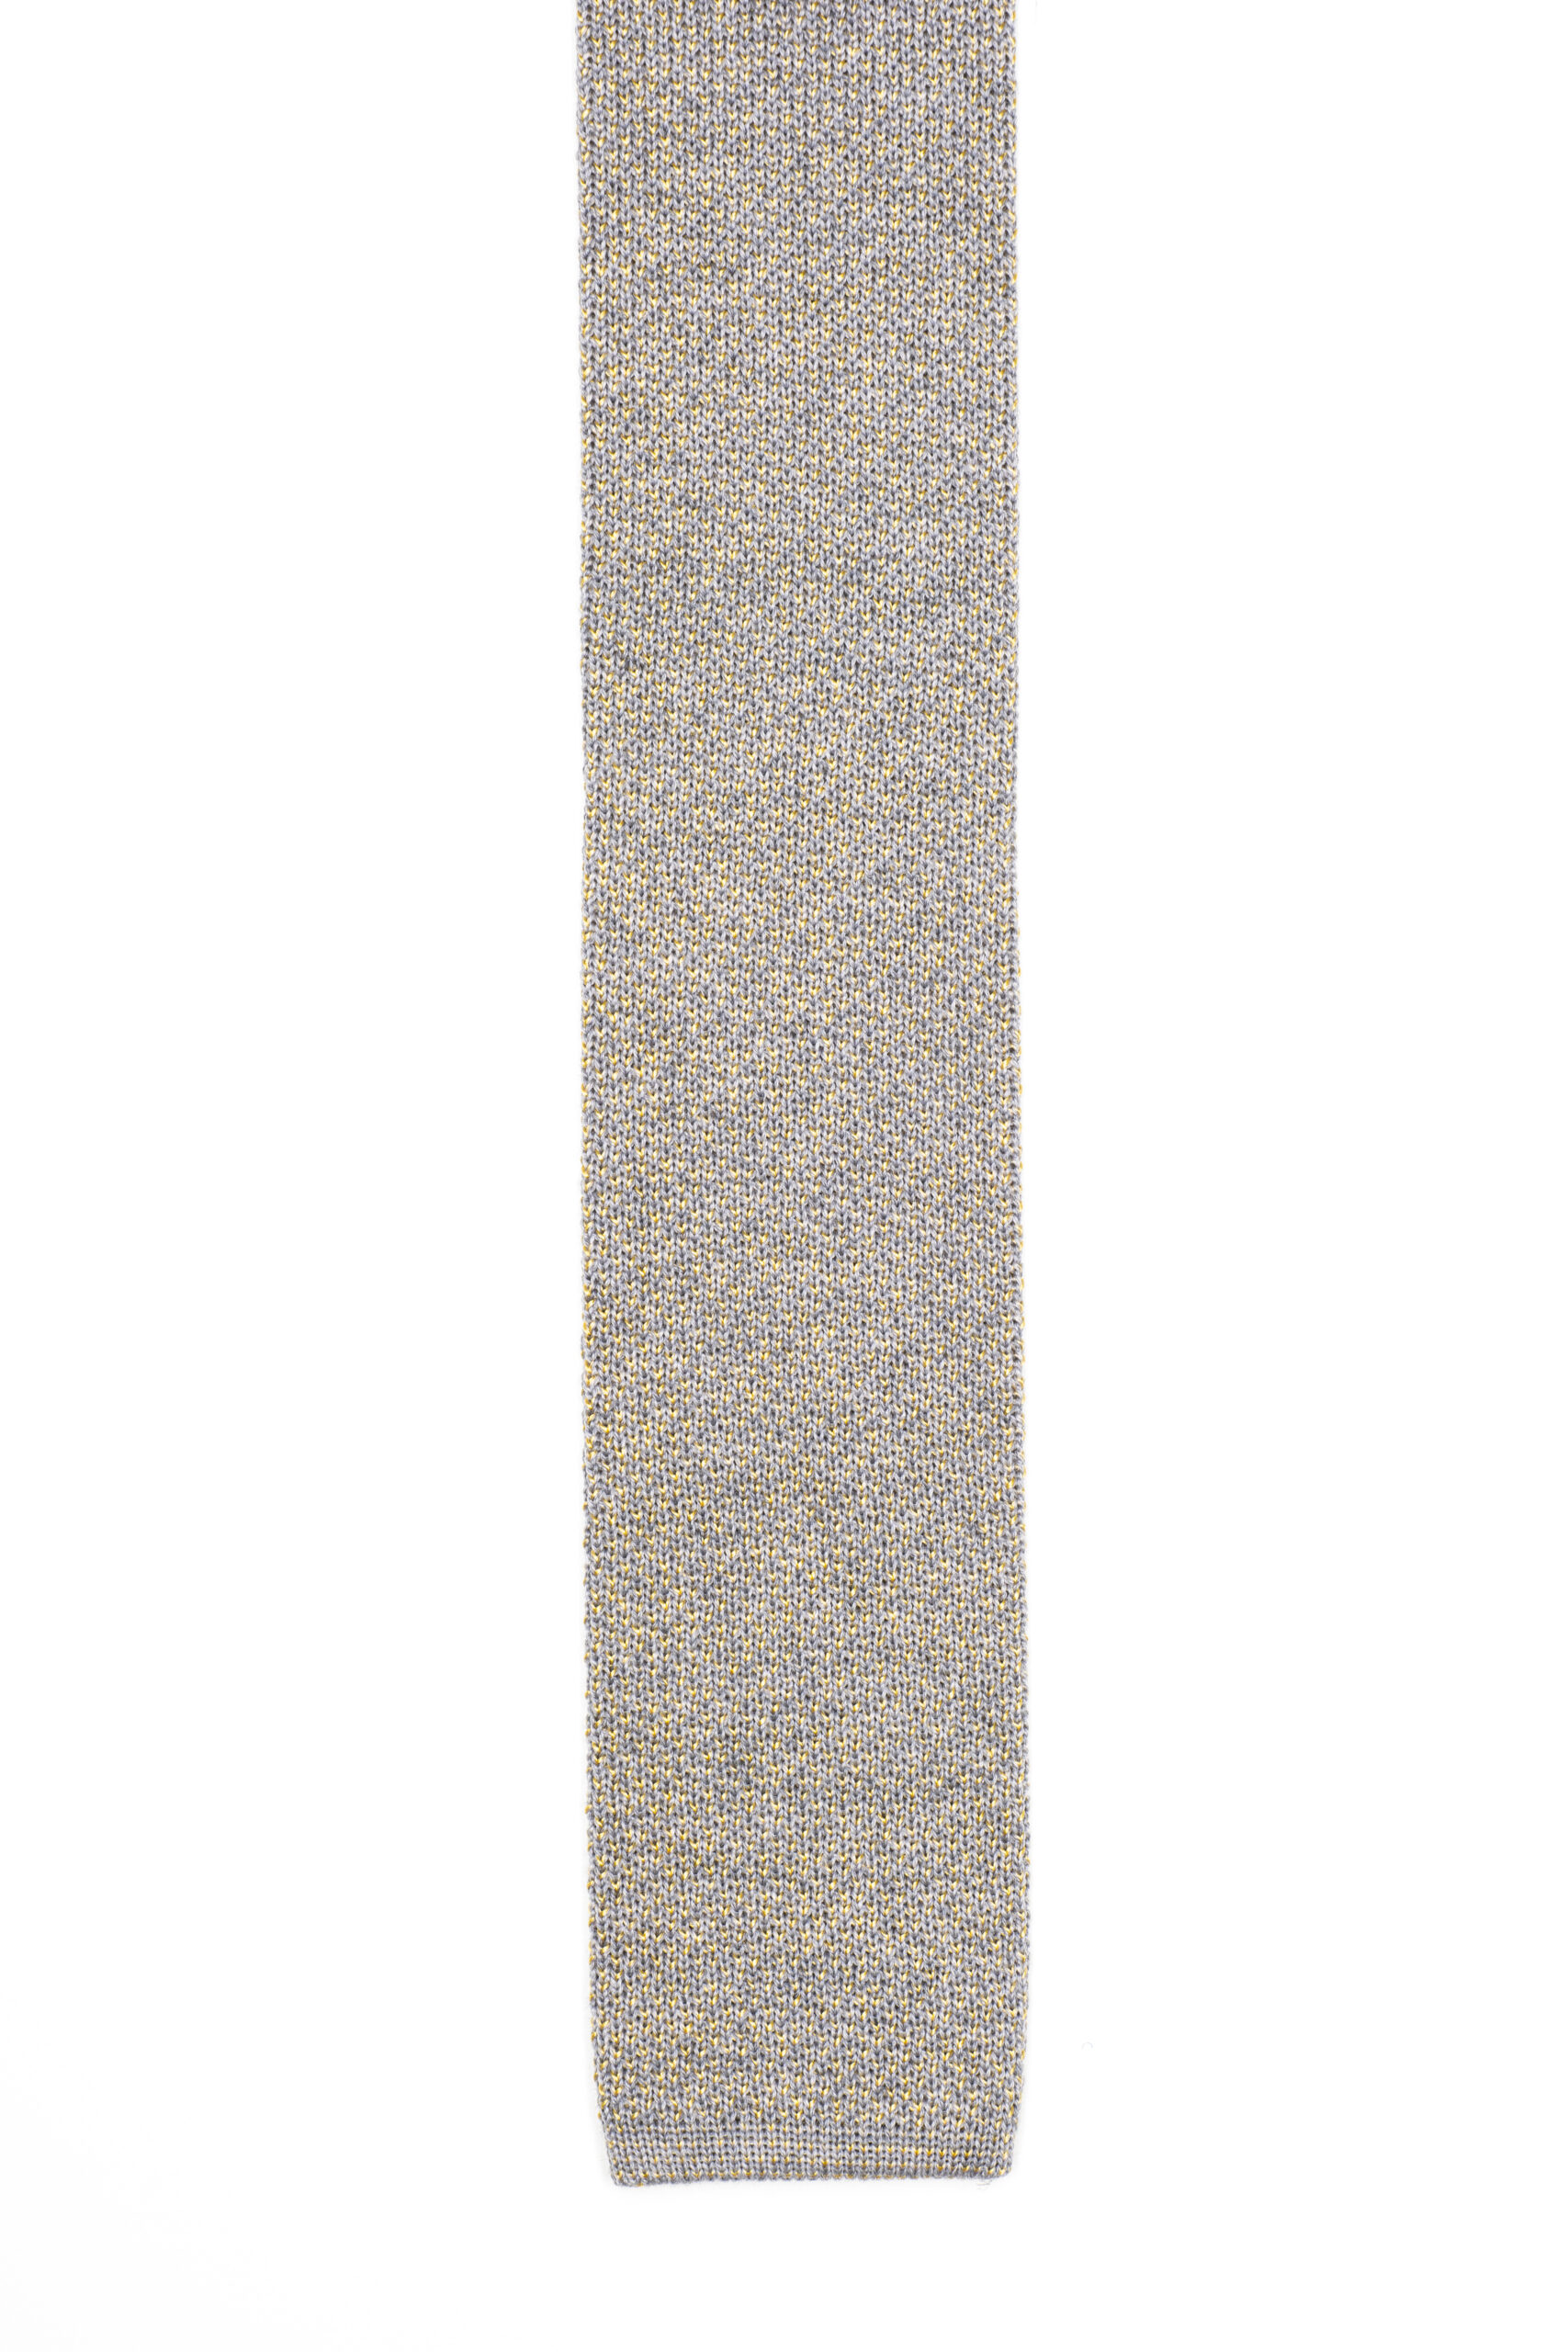 cravatta-filo-seta-grigio-beola-giallo-ginestra_1